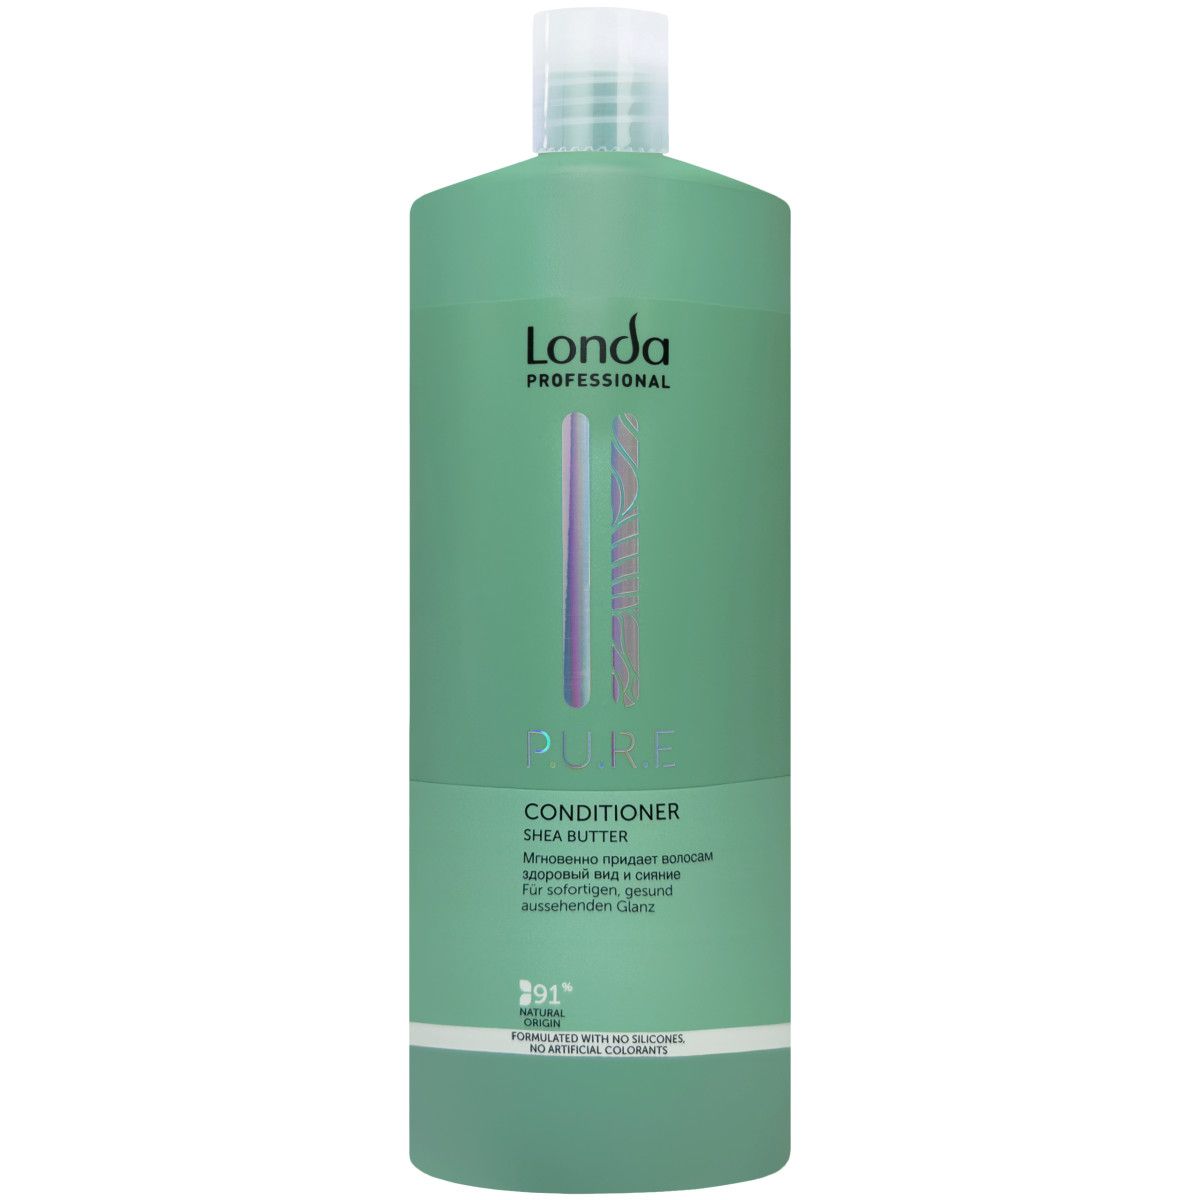 Londa Pure Conditioner - odżywka z witaminami do włosów suchych, 1000ml